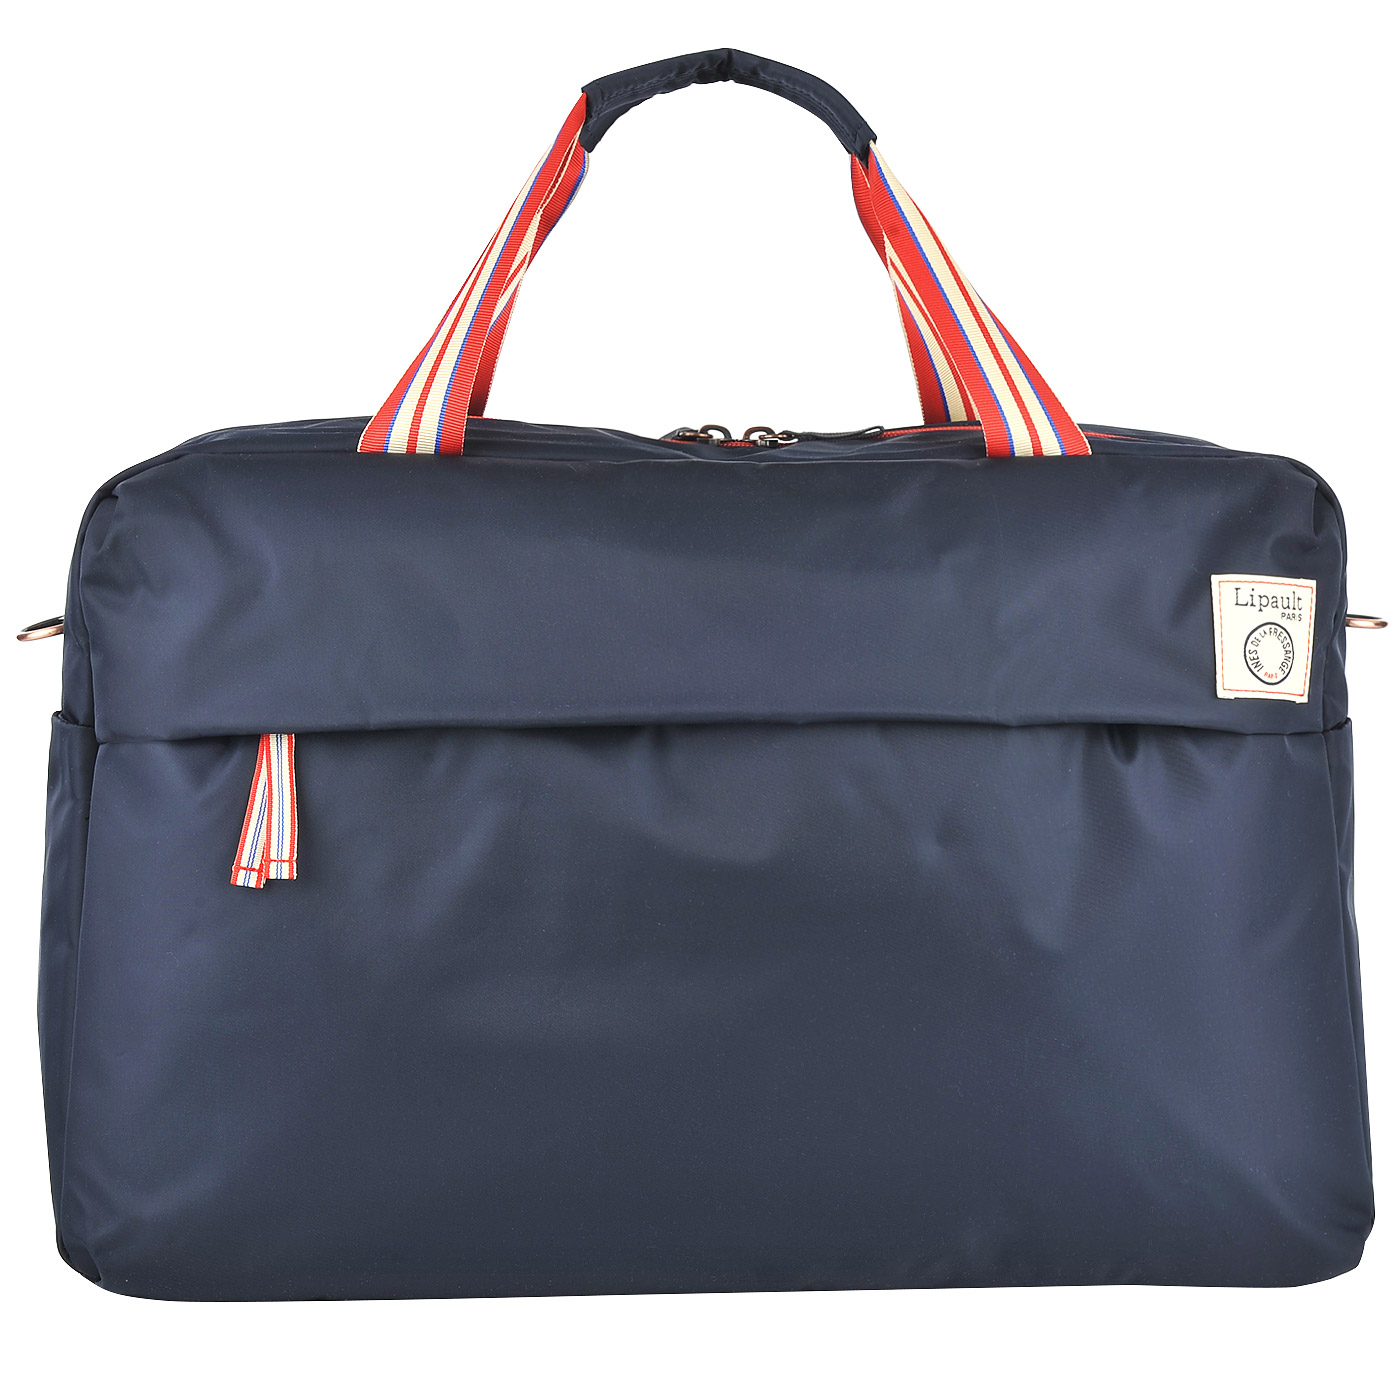 Текстильная дорожная сумка синего цвета Lipault